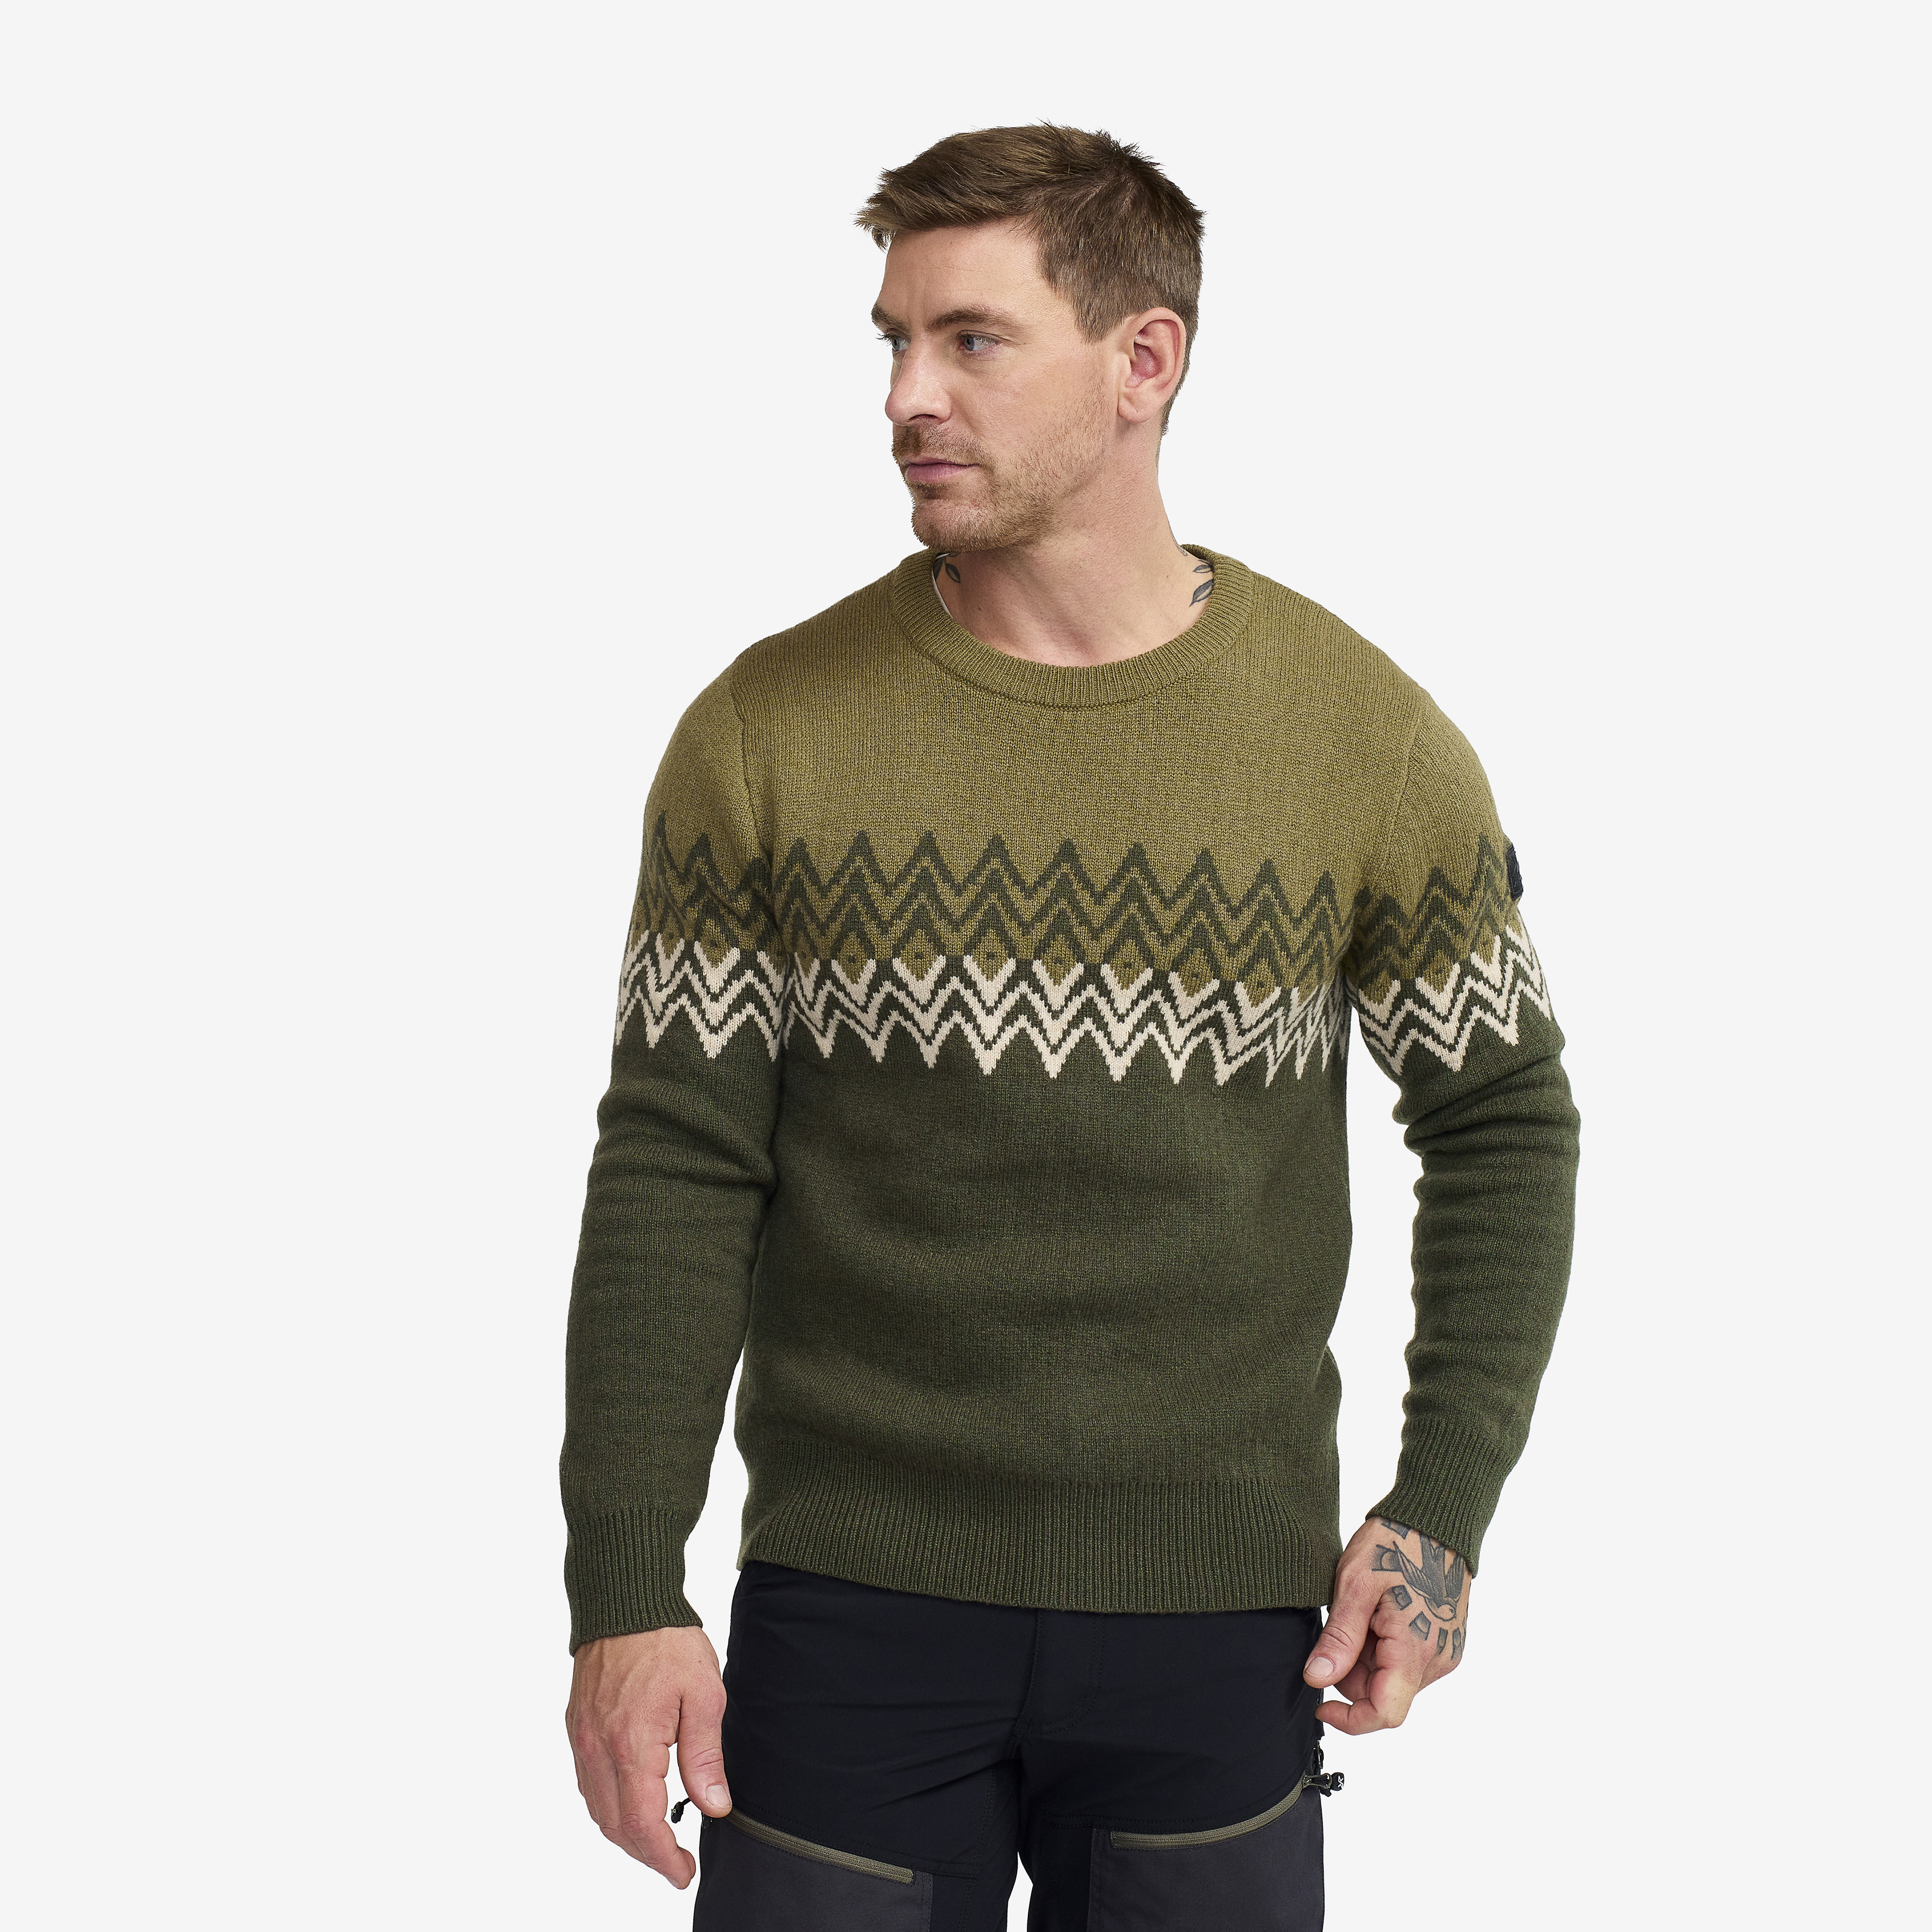 Heavy Knit Sweater - Herr - Forest Night, Storlek:M - Herr > Tröjor > Skjortor & Långärmade Tröjor